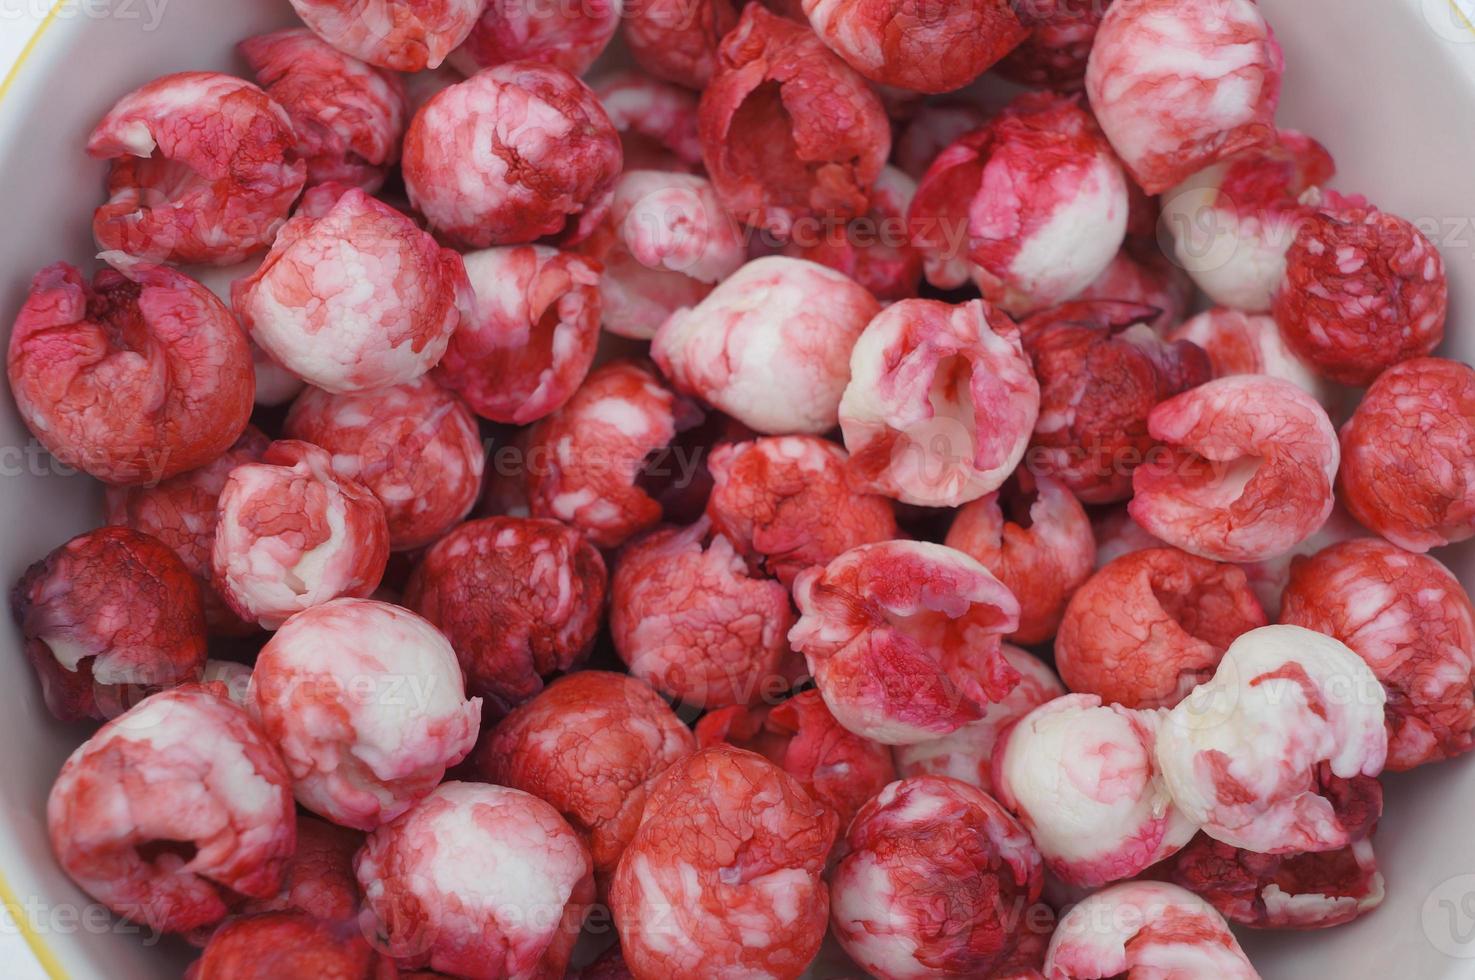 manila tamarindo fruta vermelho rosa doce gosto semente conceito foto